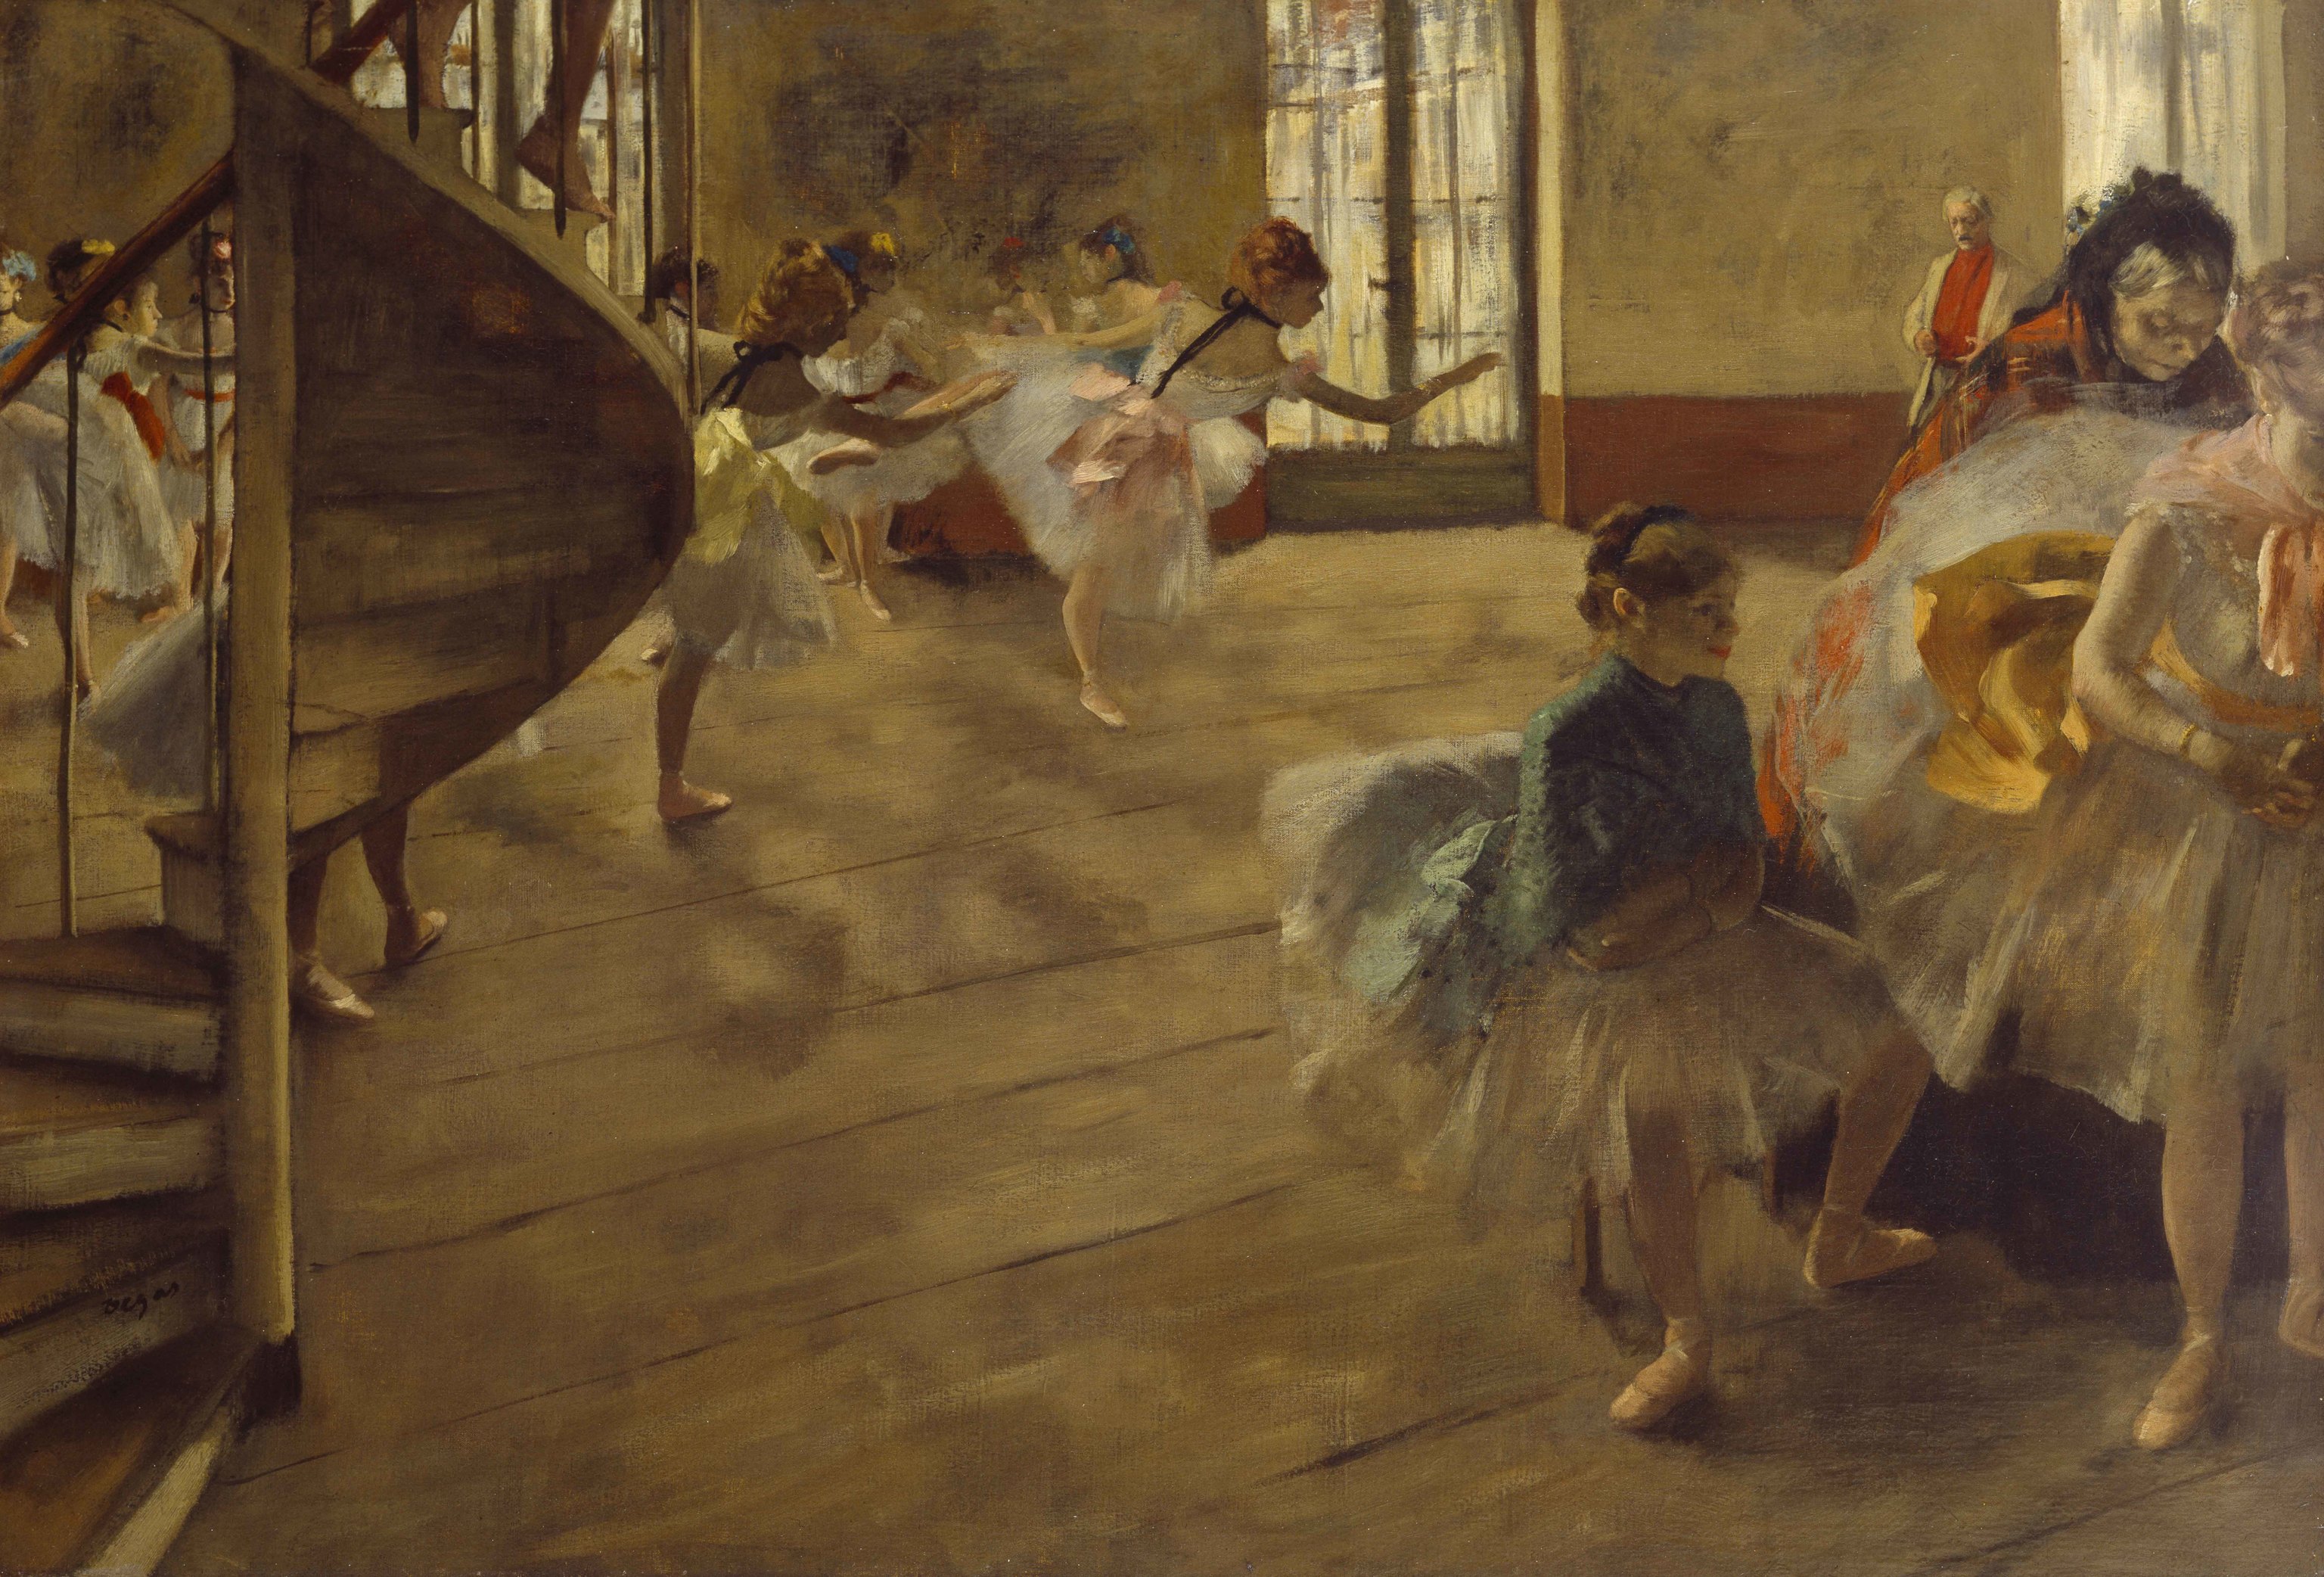 Imagen de 'El ensayo' de Degas.